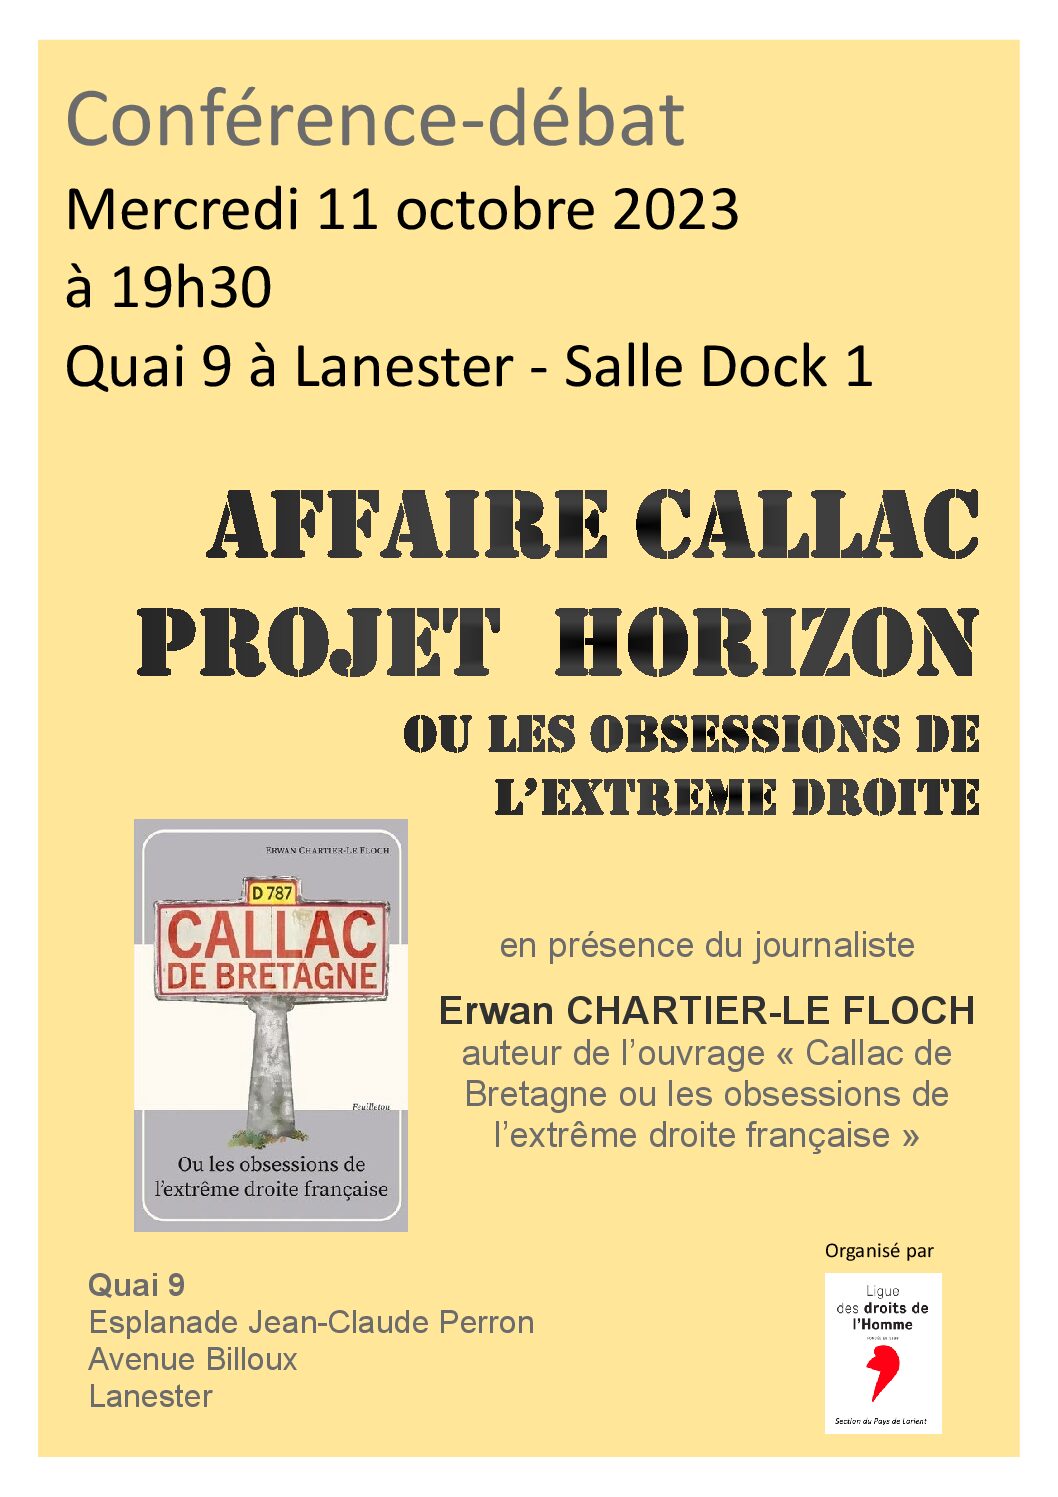 Conférence-débat : l'affaire Callac